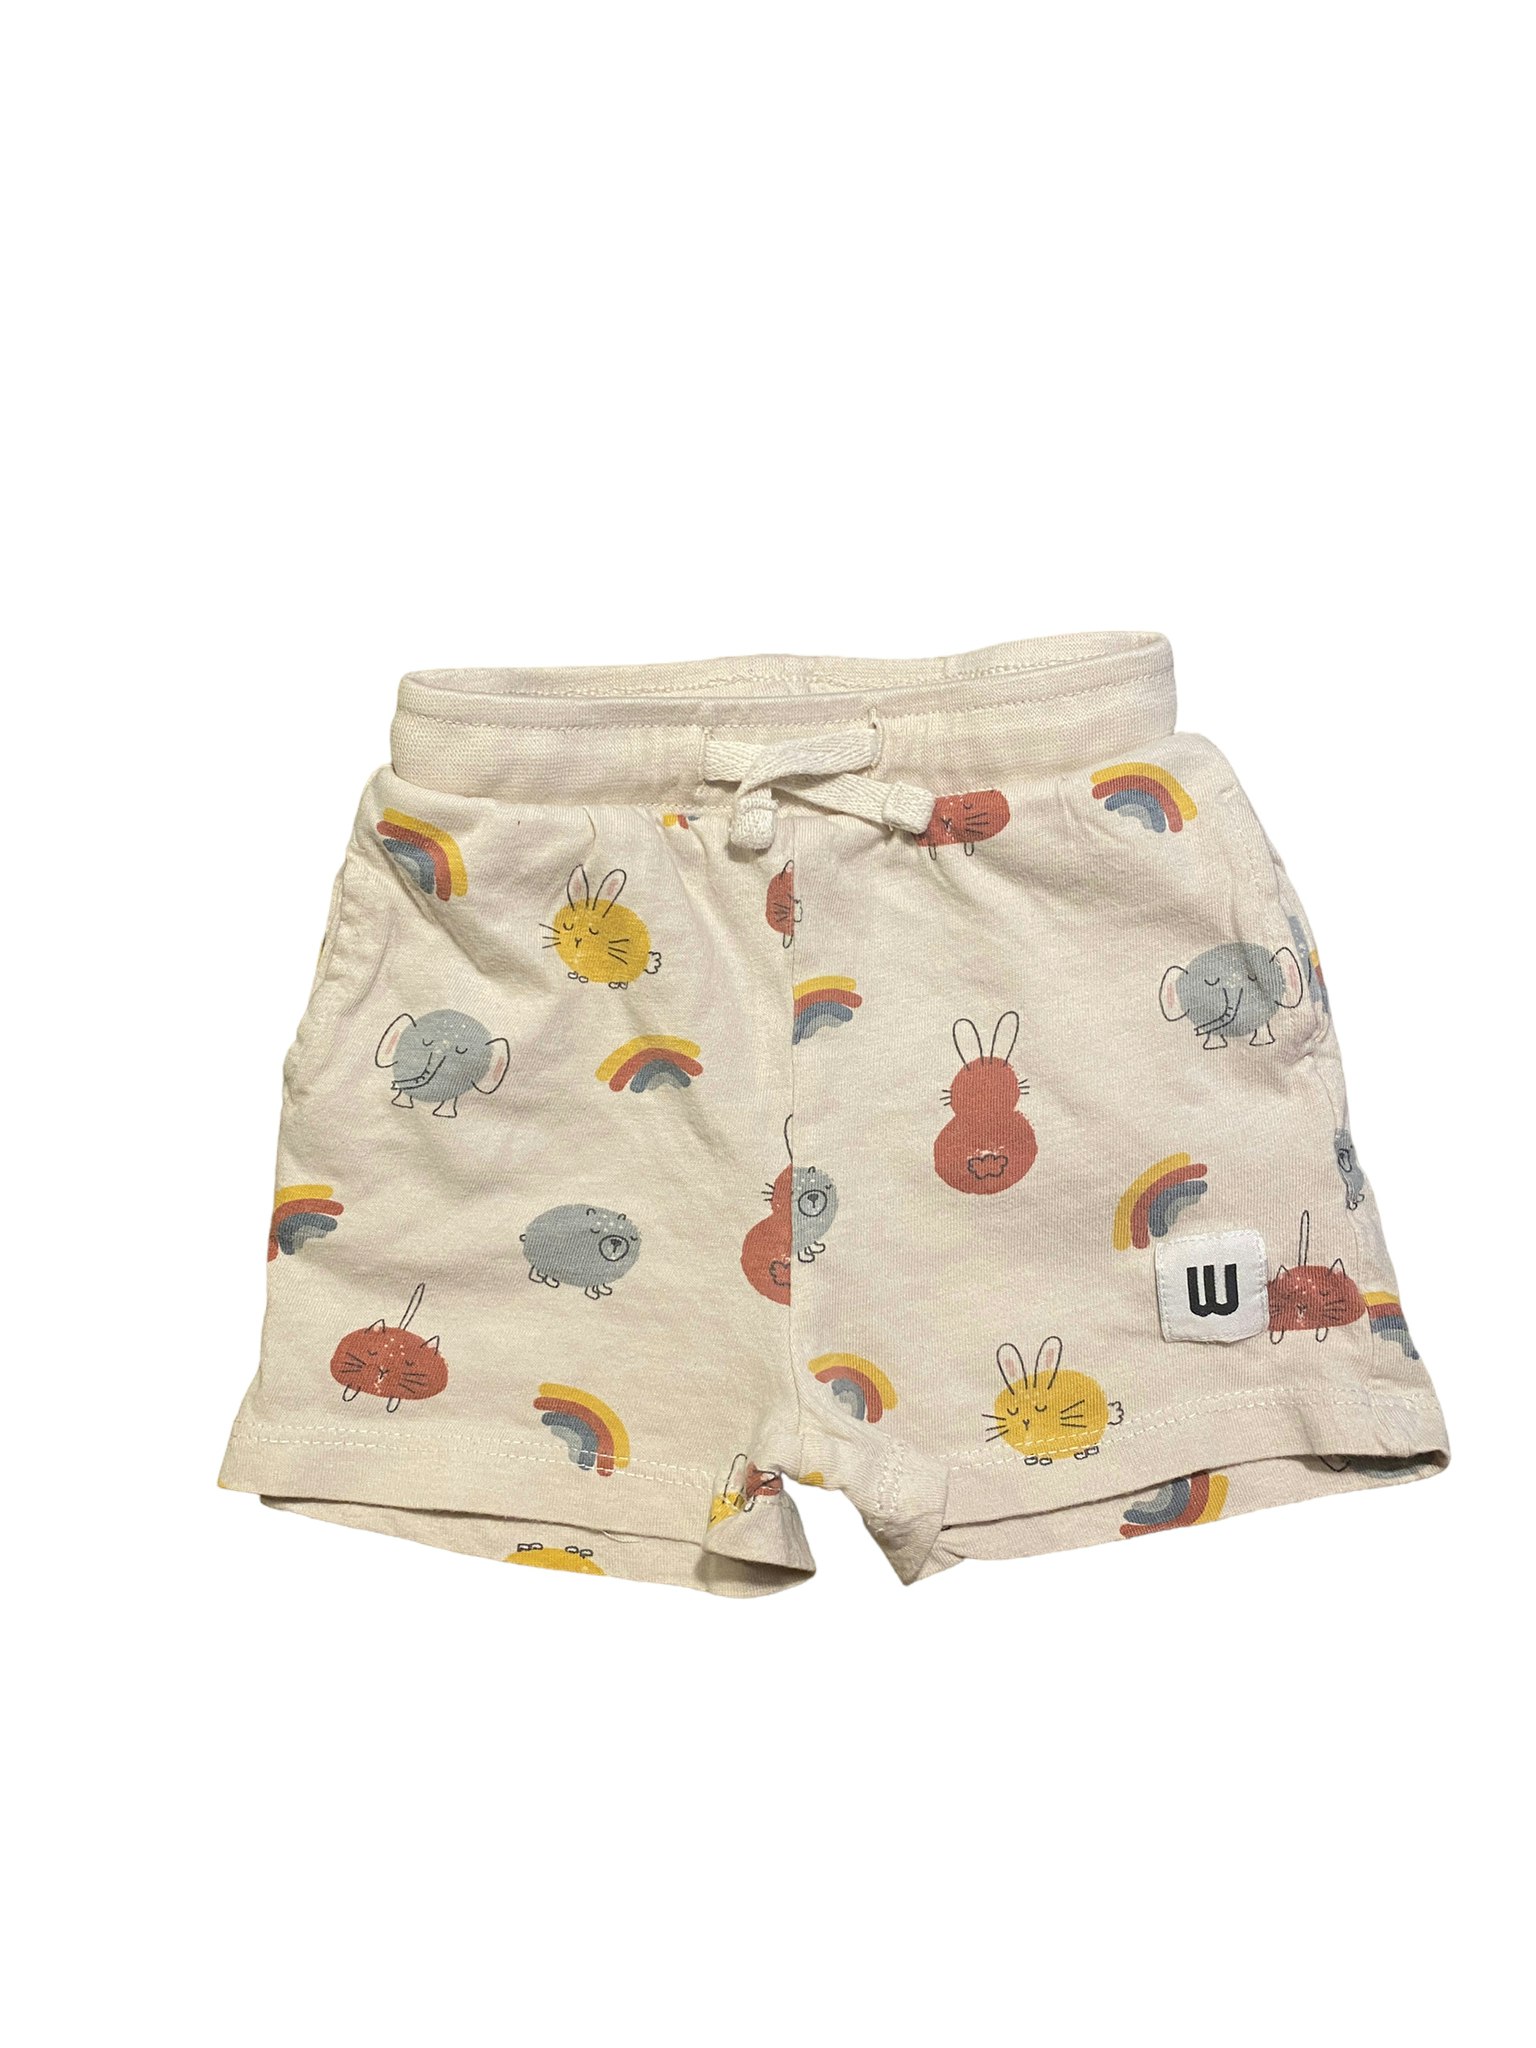 Shorts, Wai Wai, stl 68